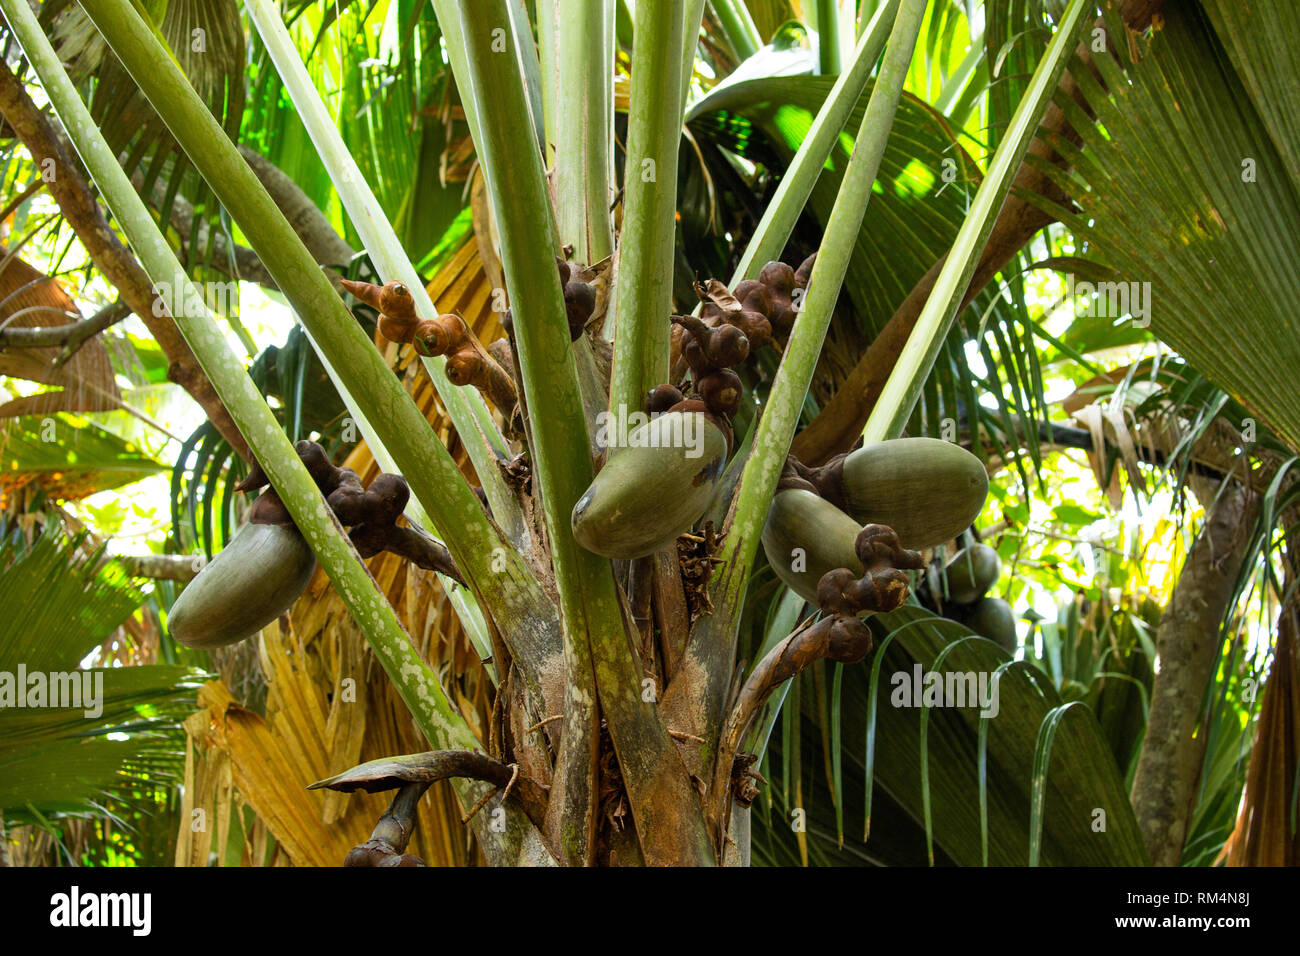 Coco de Mer Samen (Lodoicea maldivica). Dies ist das größte und schwerste Samen der Welt. Es kann bis zu 30 Kilogramm wiegen. In der Seyche fotografiert. Stockfoto